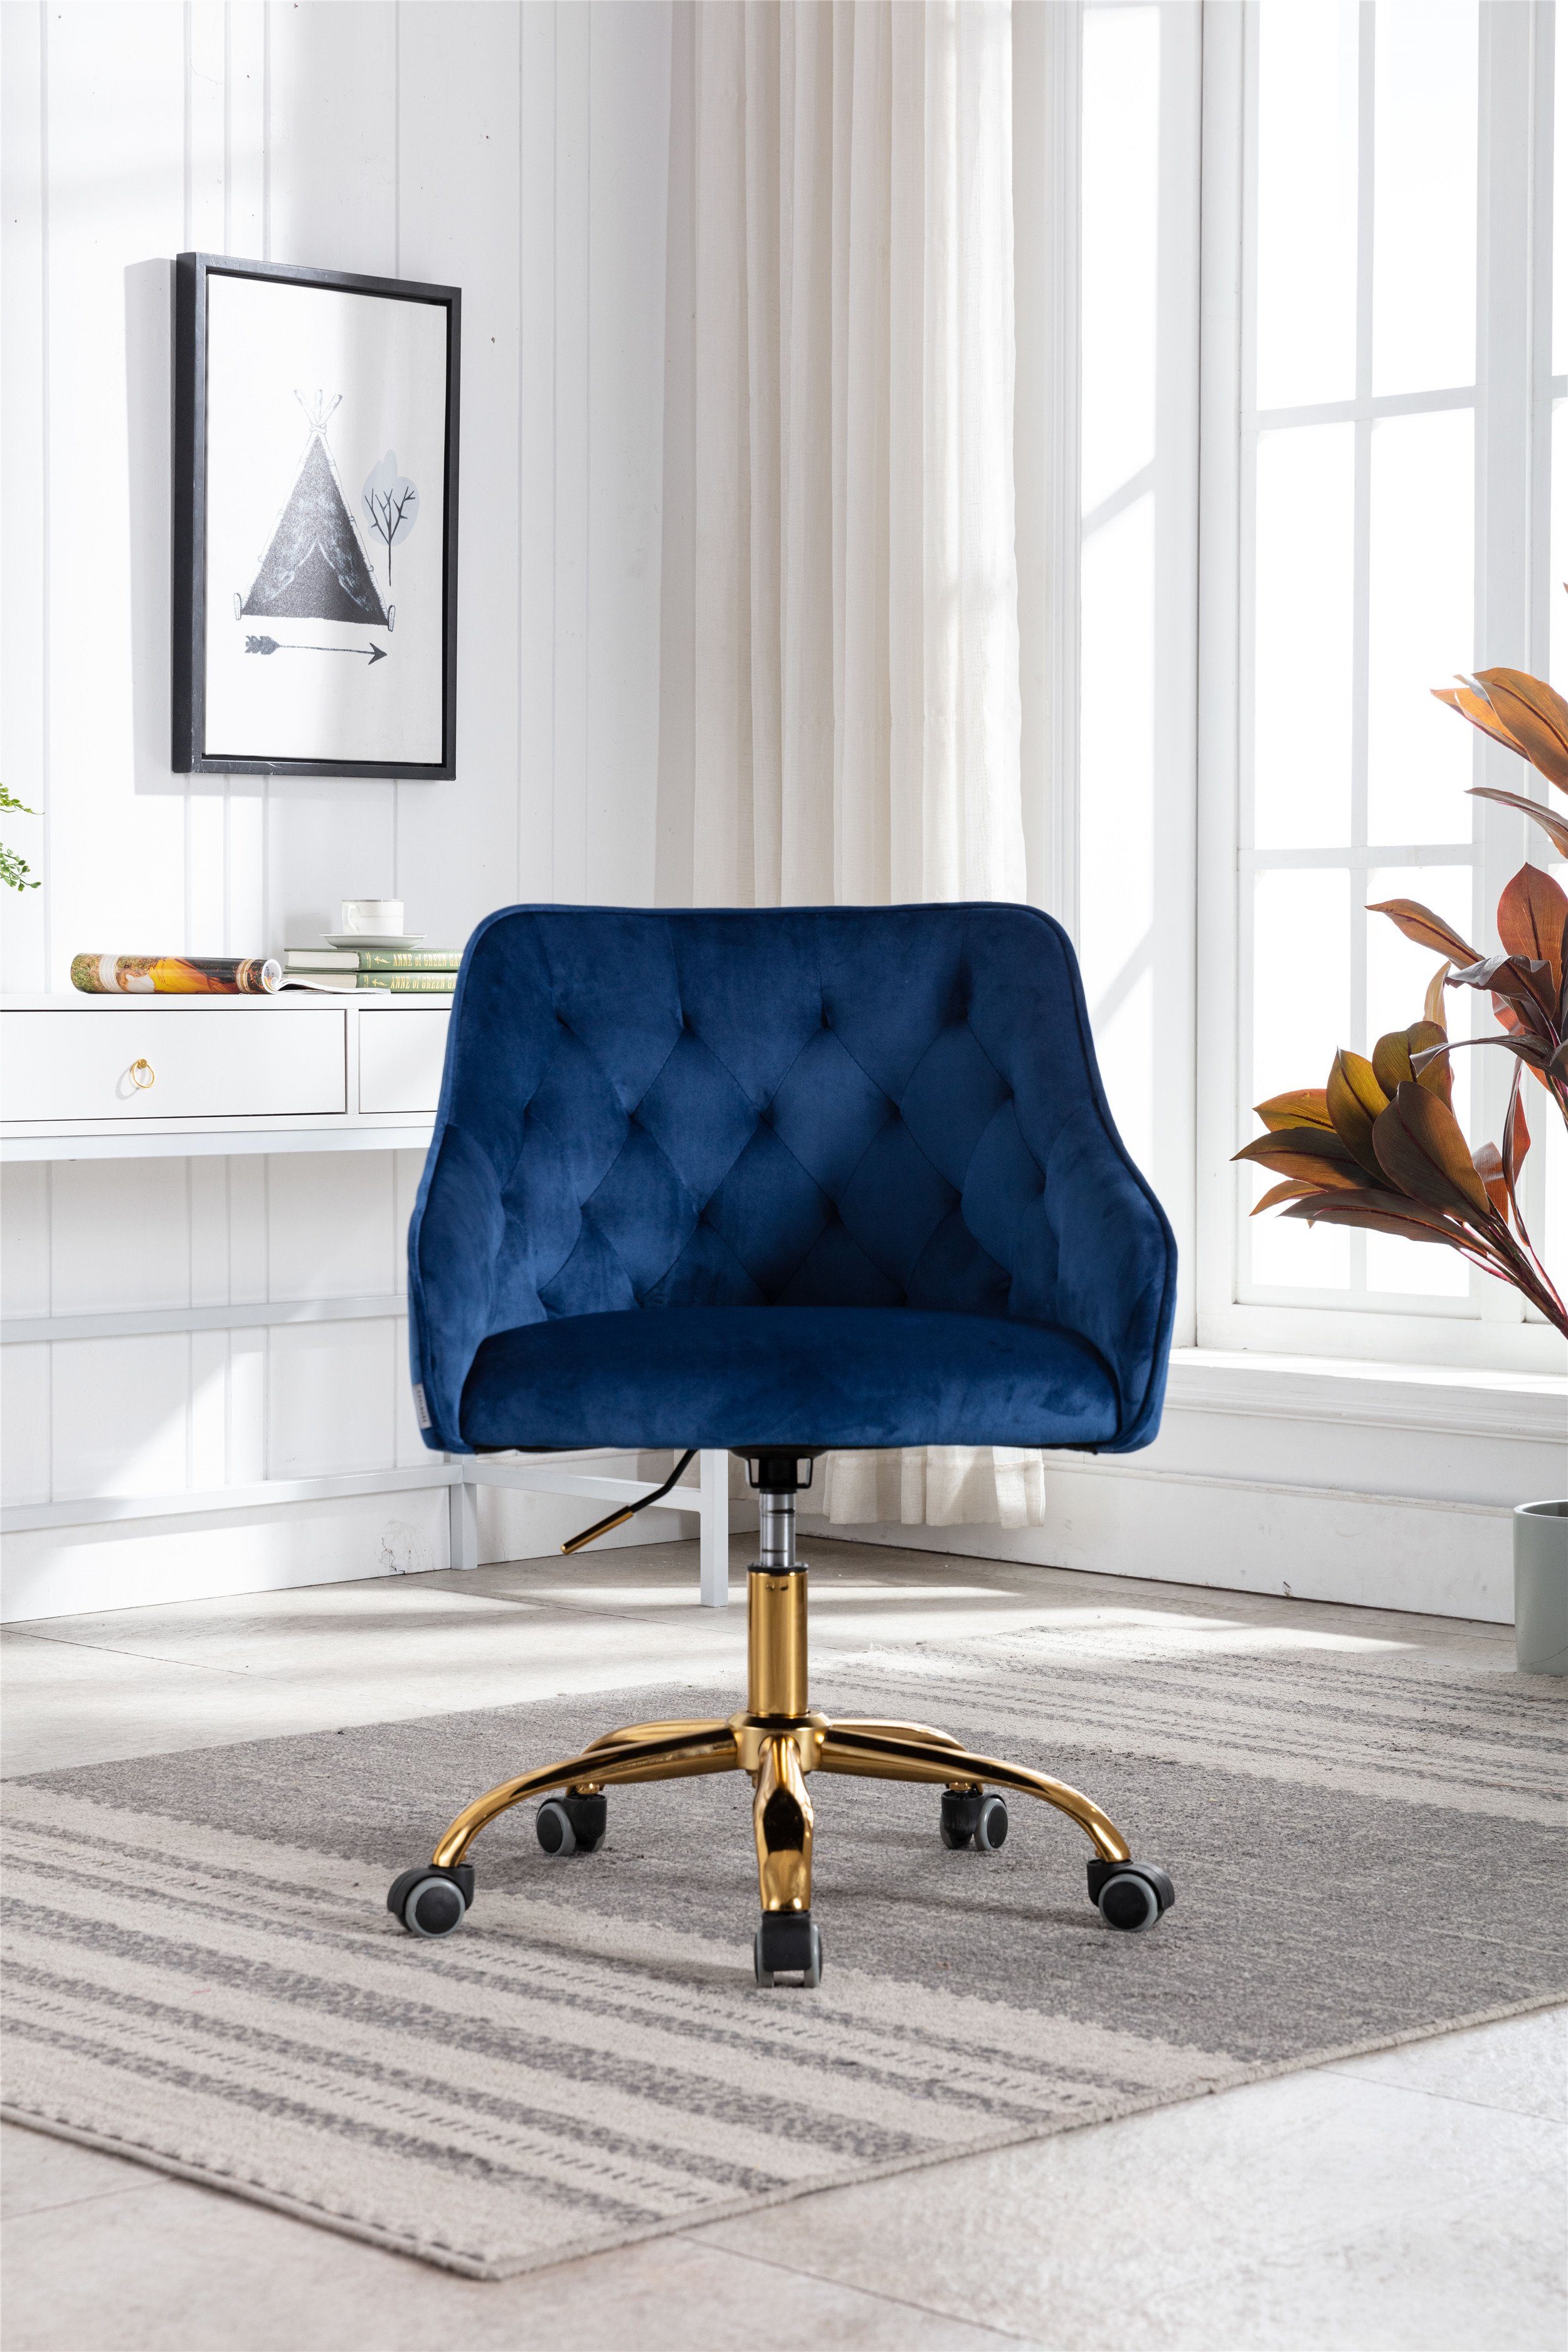 WISHDOR Stuhl Samt Bürostuhl, Schminkstuhl, 360° drehbar (Hübscher schicker Stuhl, goldener Bürostuhl), Goldener Bürostuhl blau